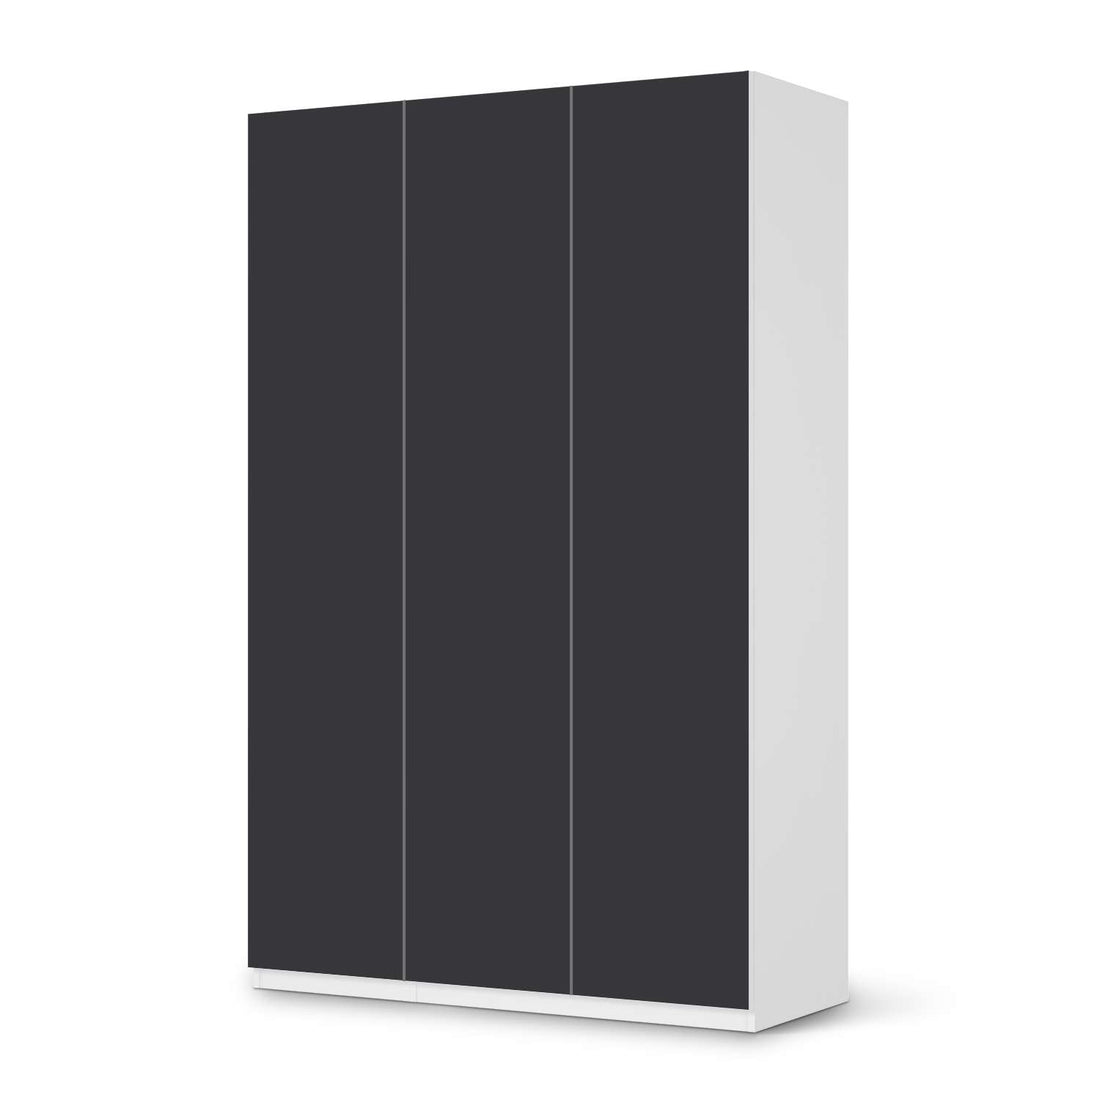 Selbstklebende Folie Grau Dark - IKEA Pax Schrank 236 cm Höhe - 3 Türen - weiss